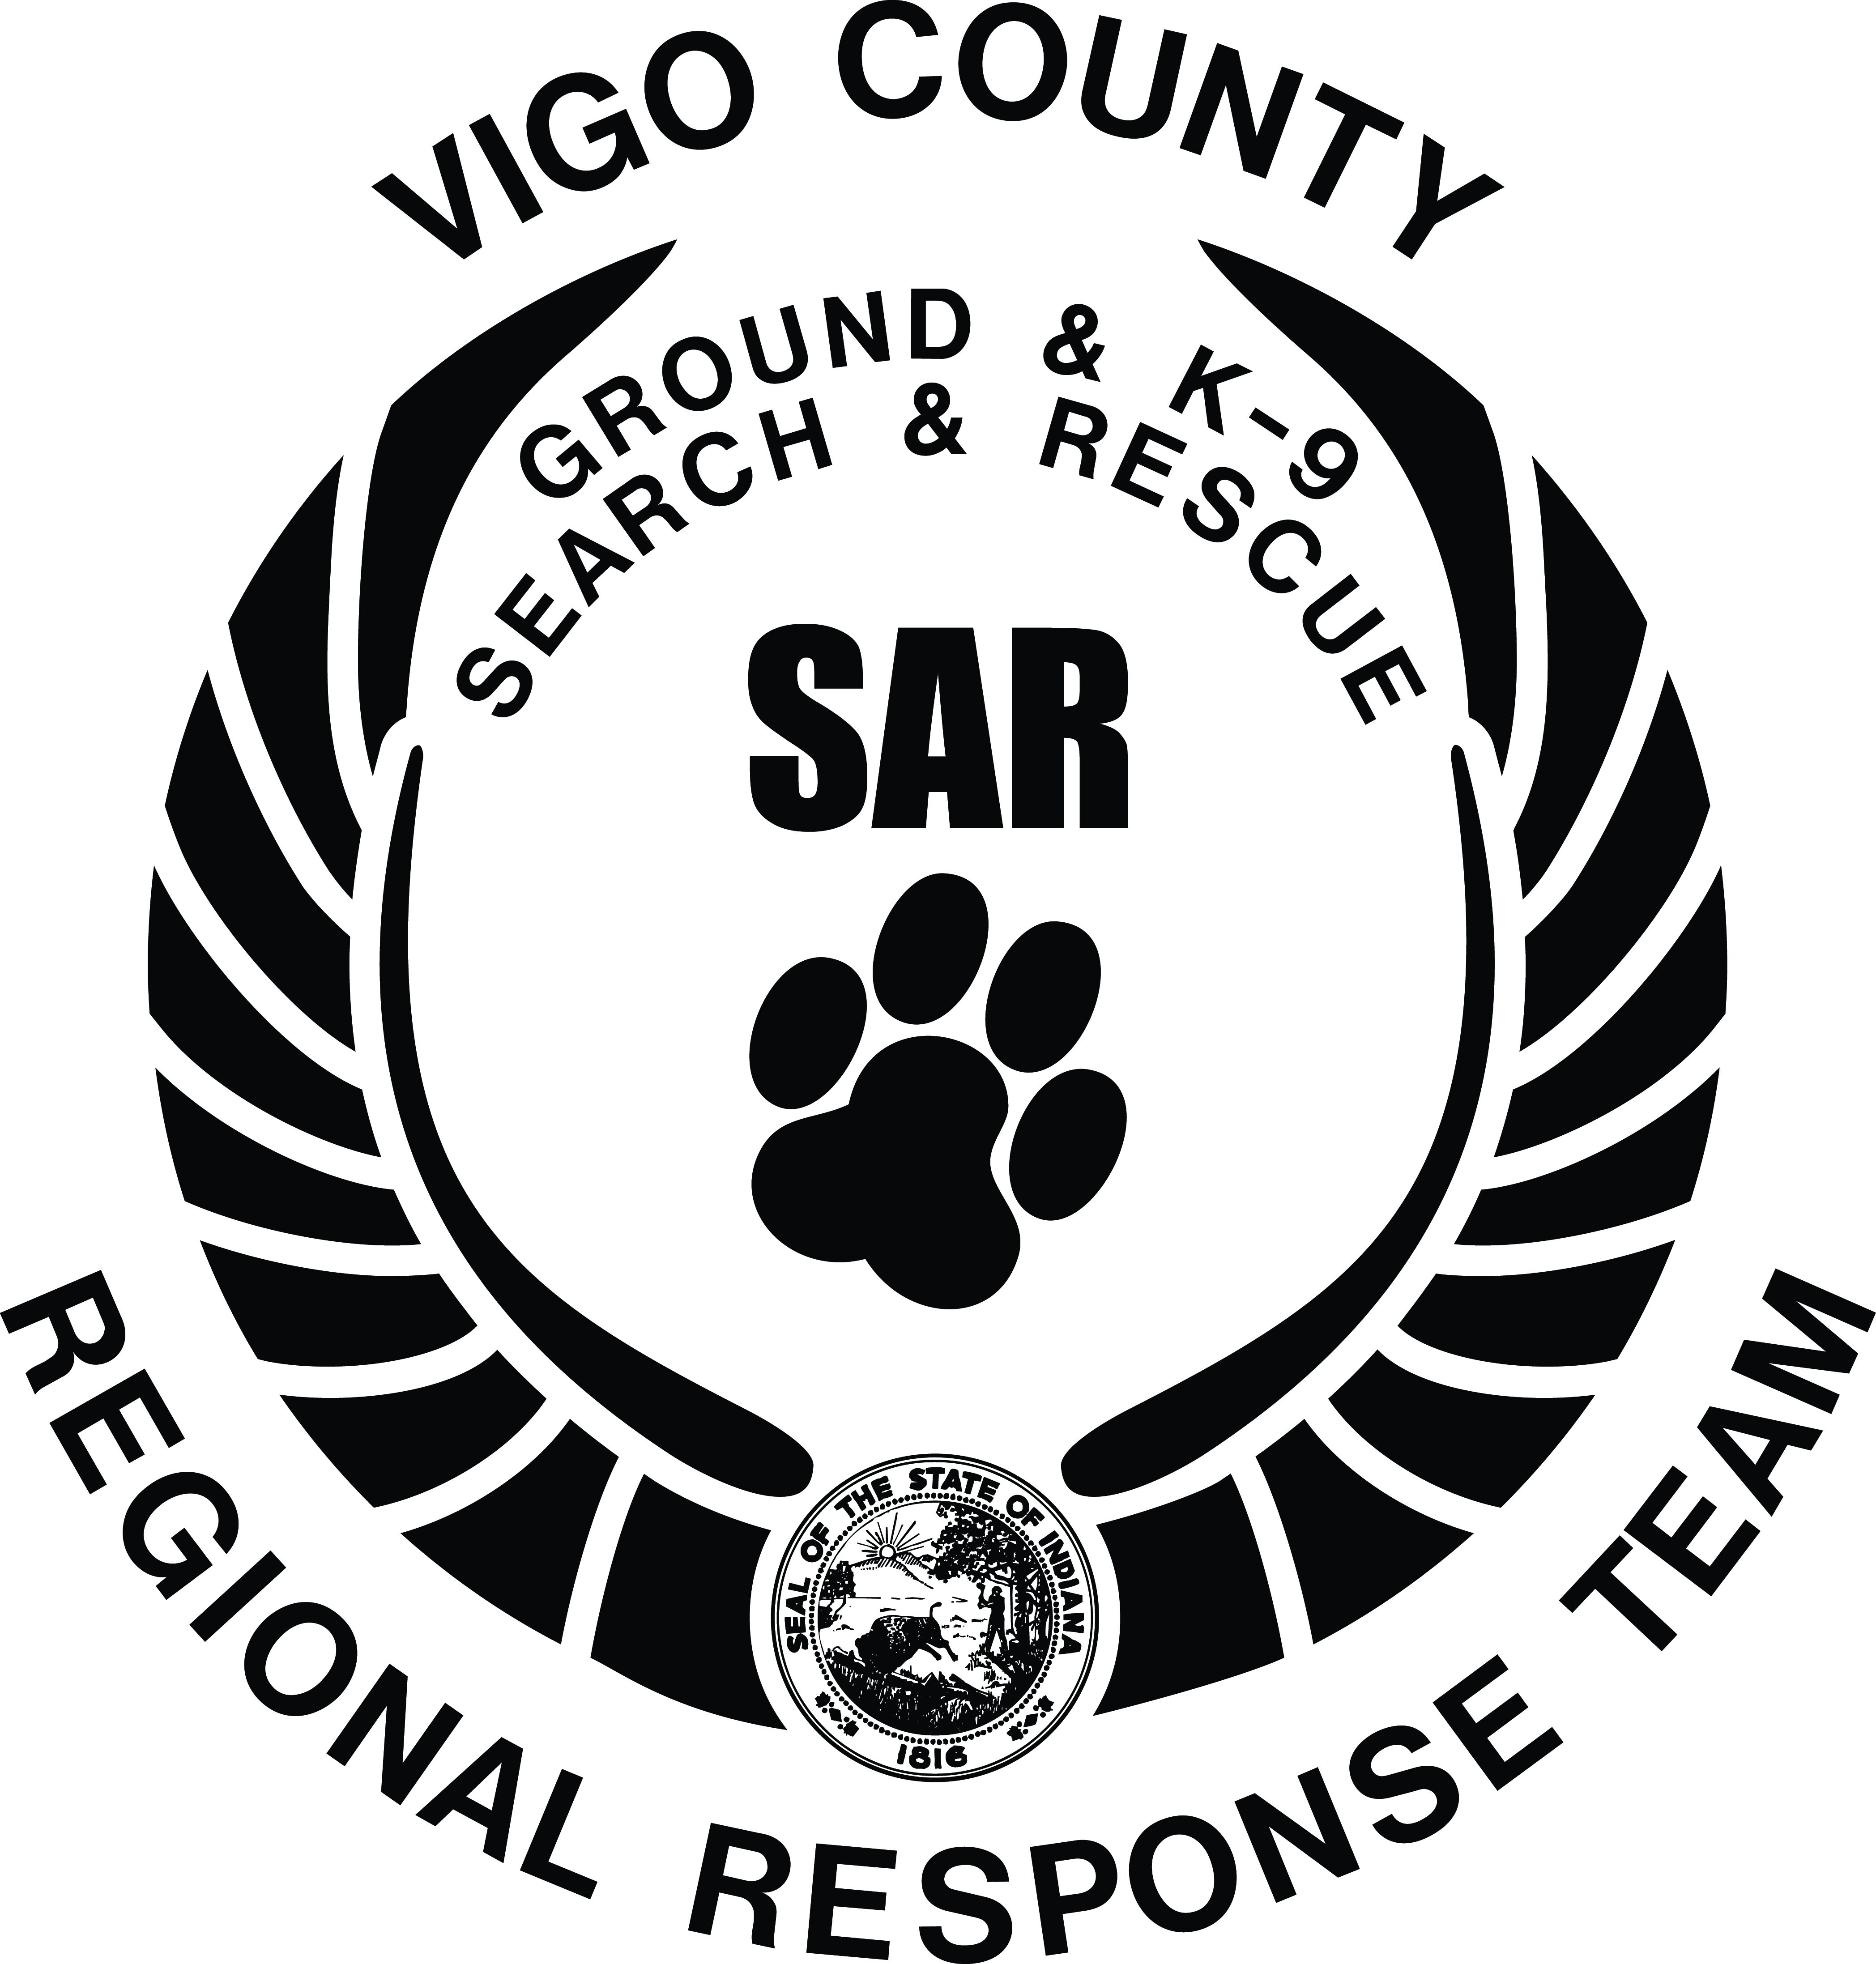 Vigo County Search and Rescue